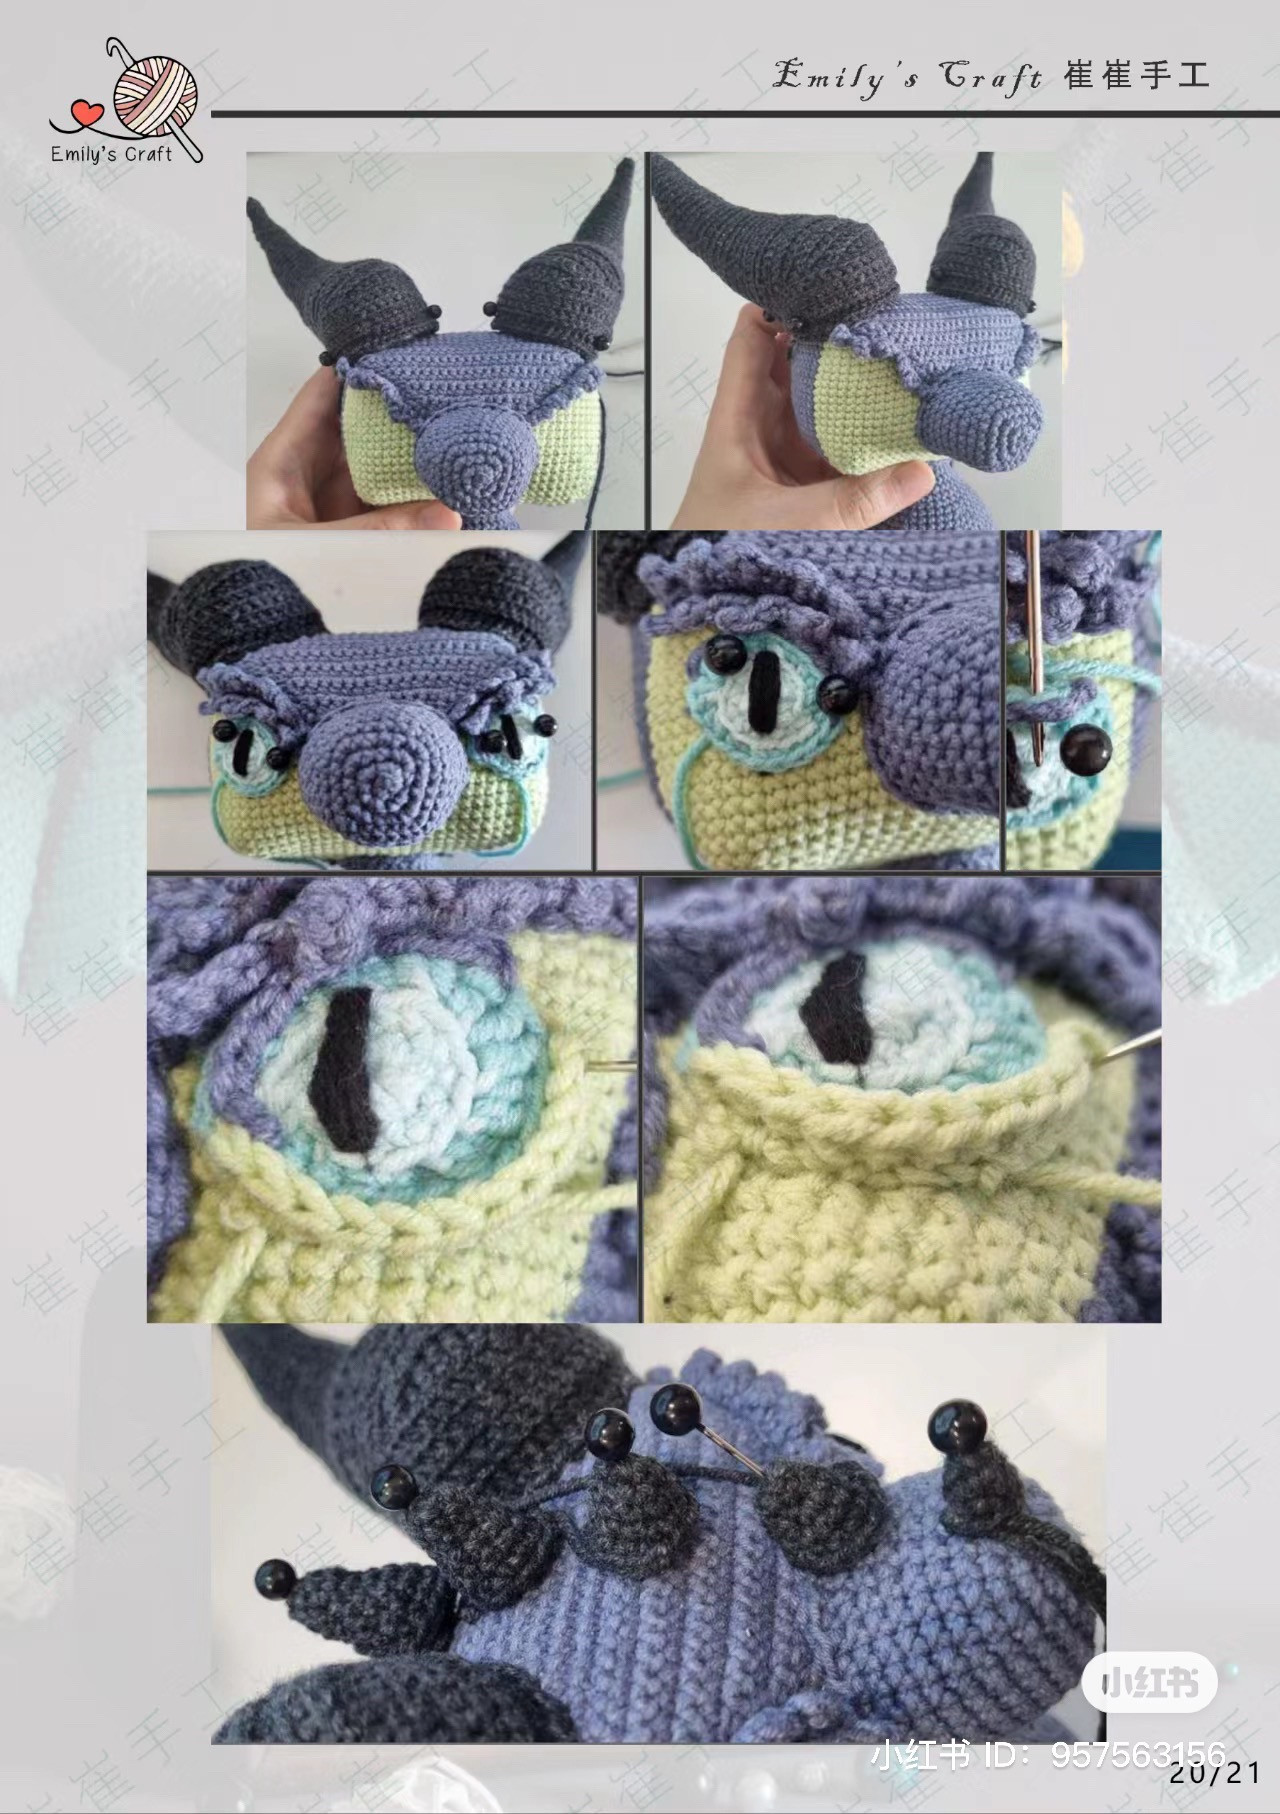 octagonal goblin crochet pattern
bat